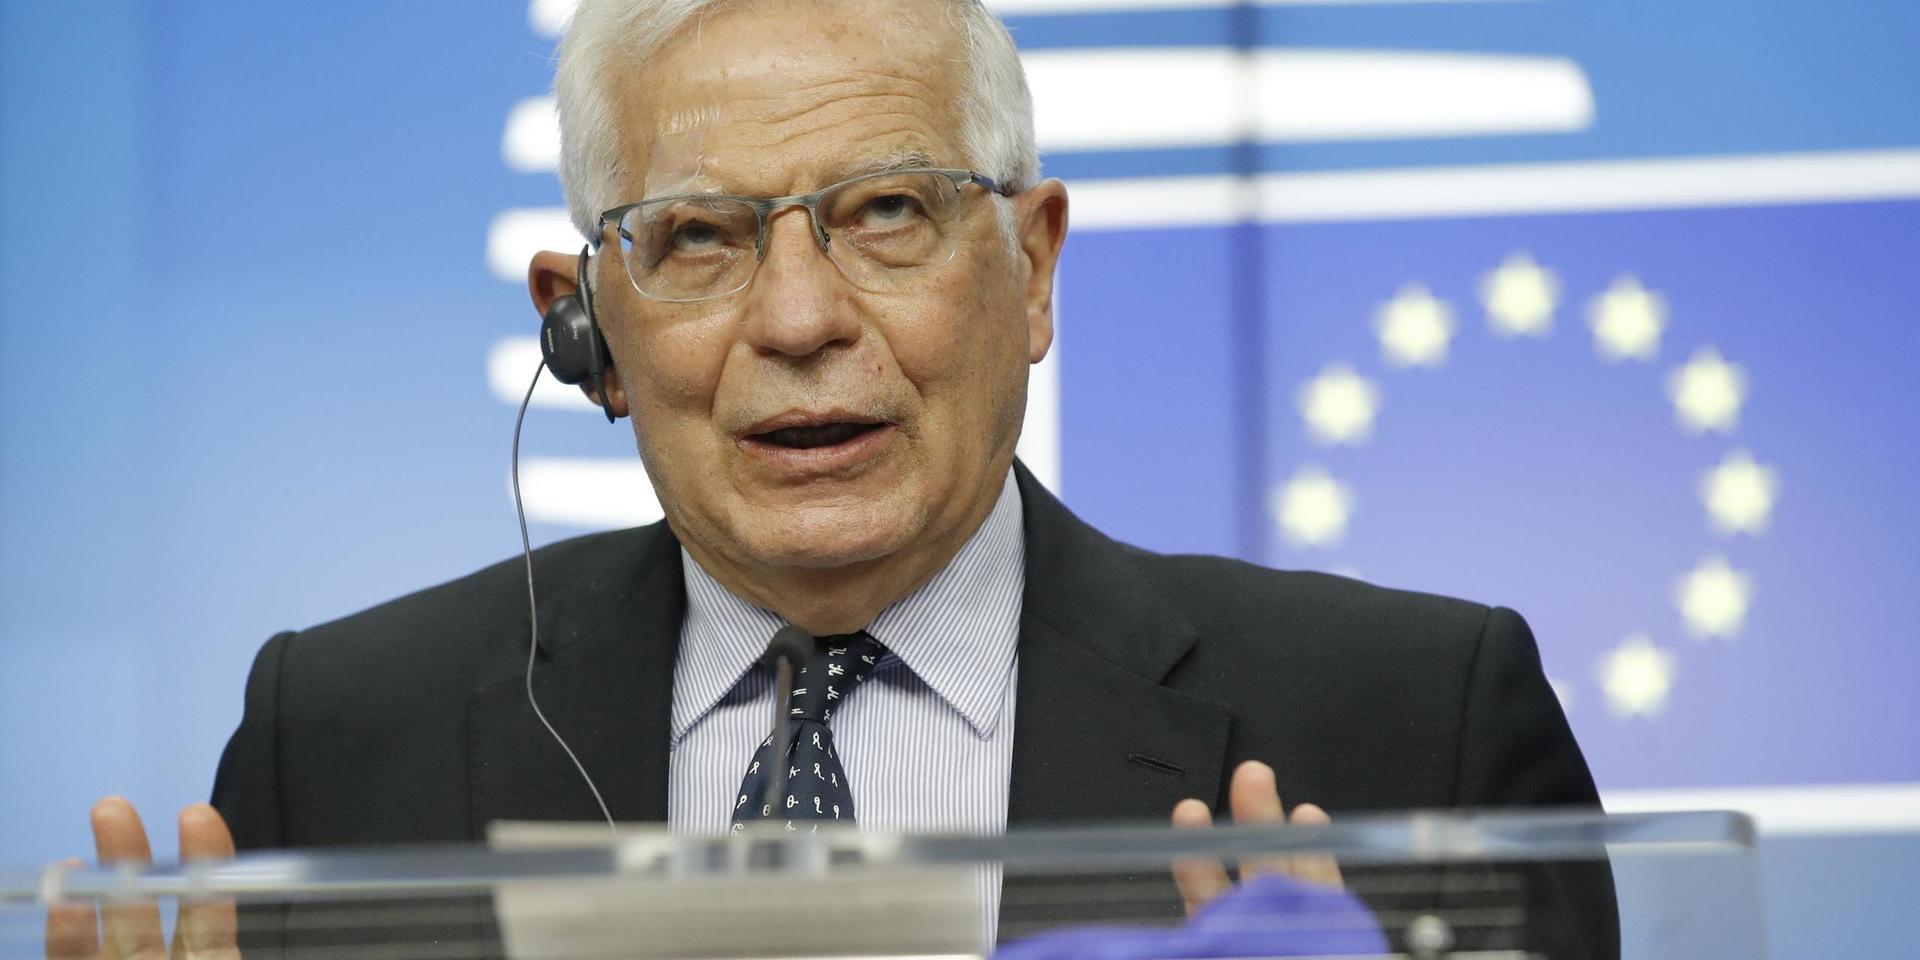 EU:s utrikespolitiske representant Josep Borrell uppmanar parterna i Mellanöstern att omedelbart upphöra med våldet och få till stånd en vapenvila.